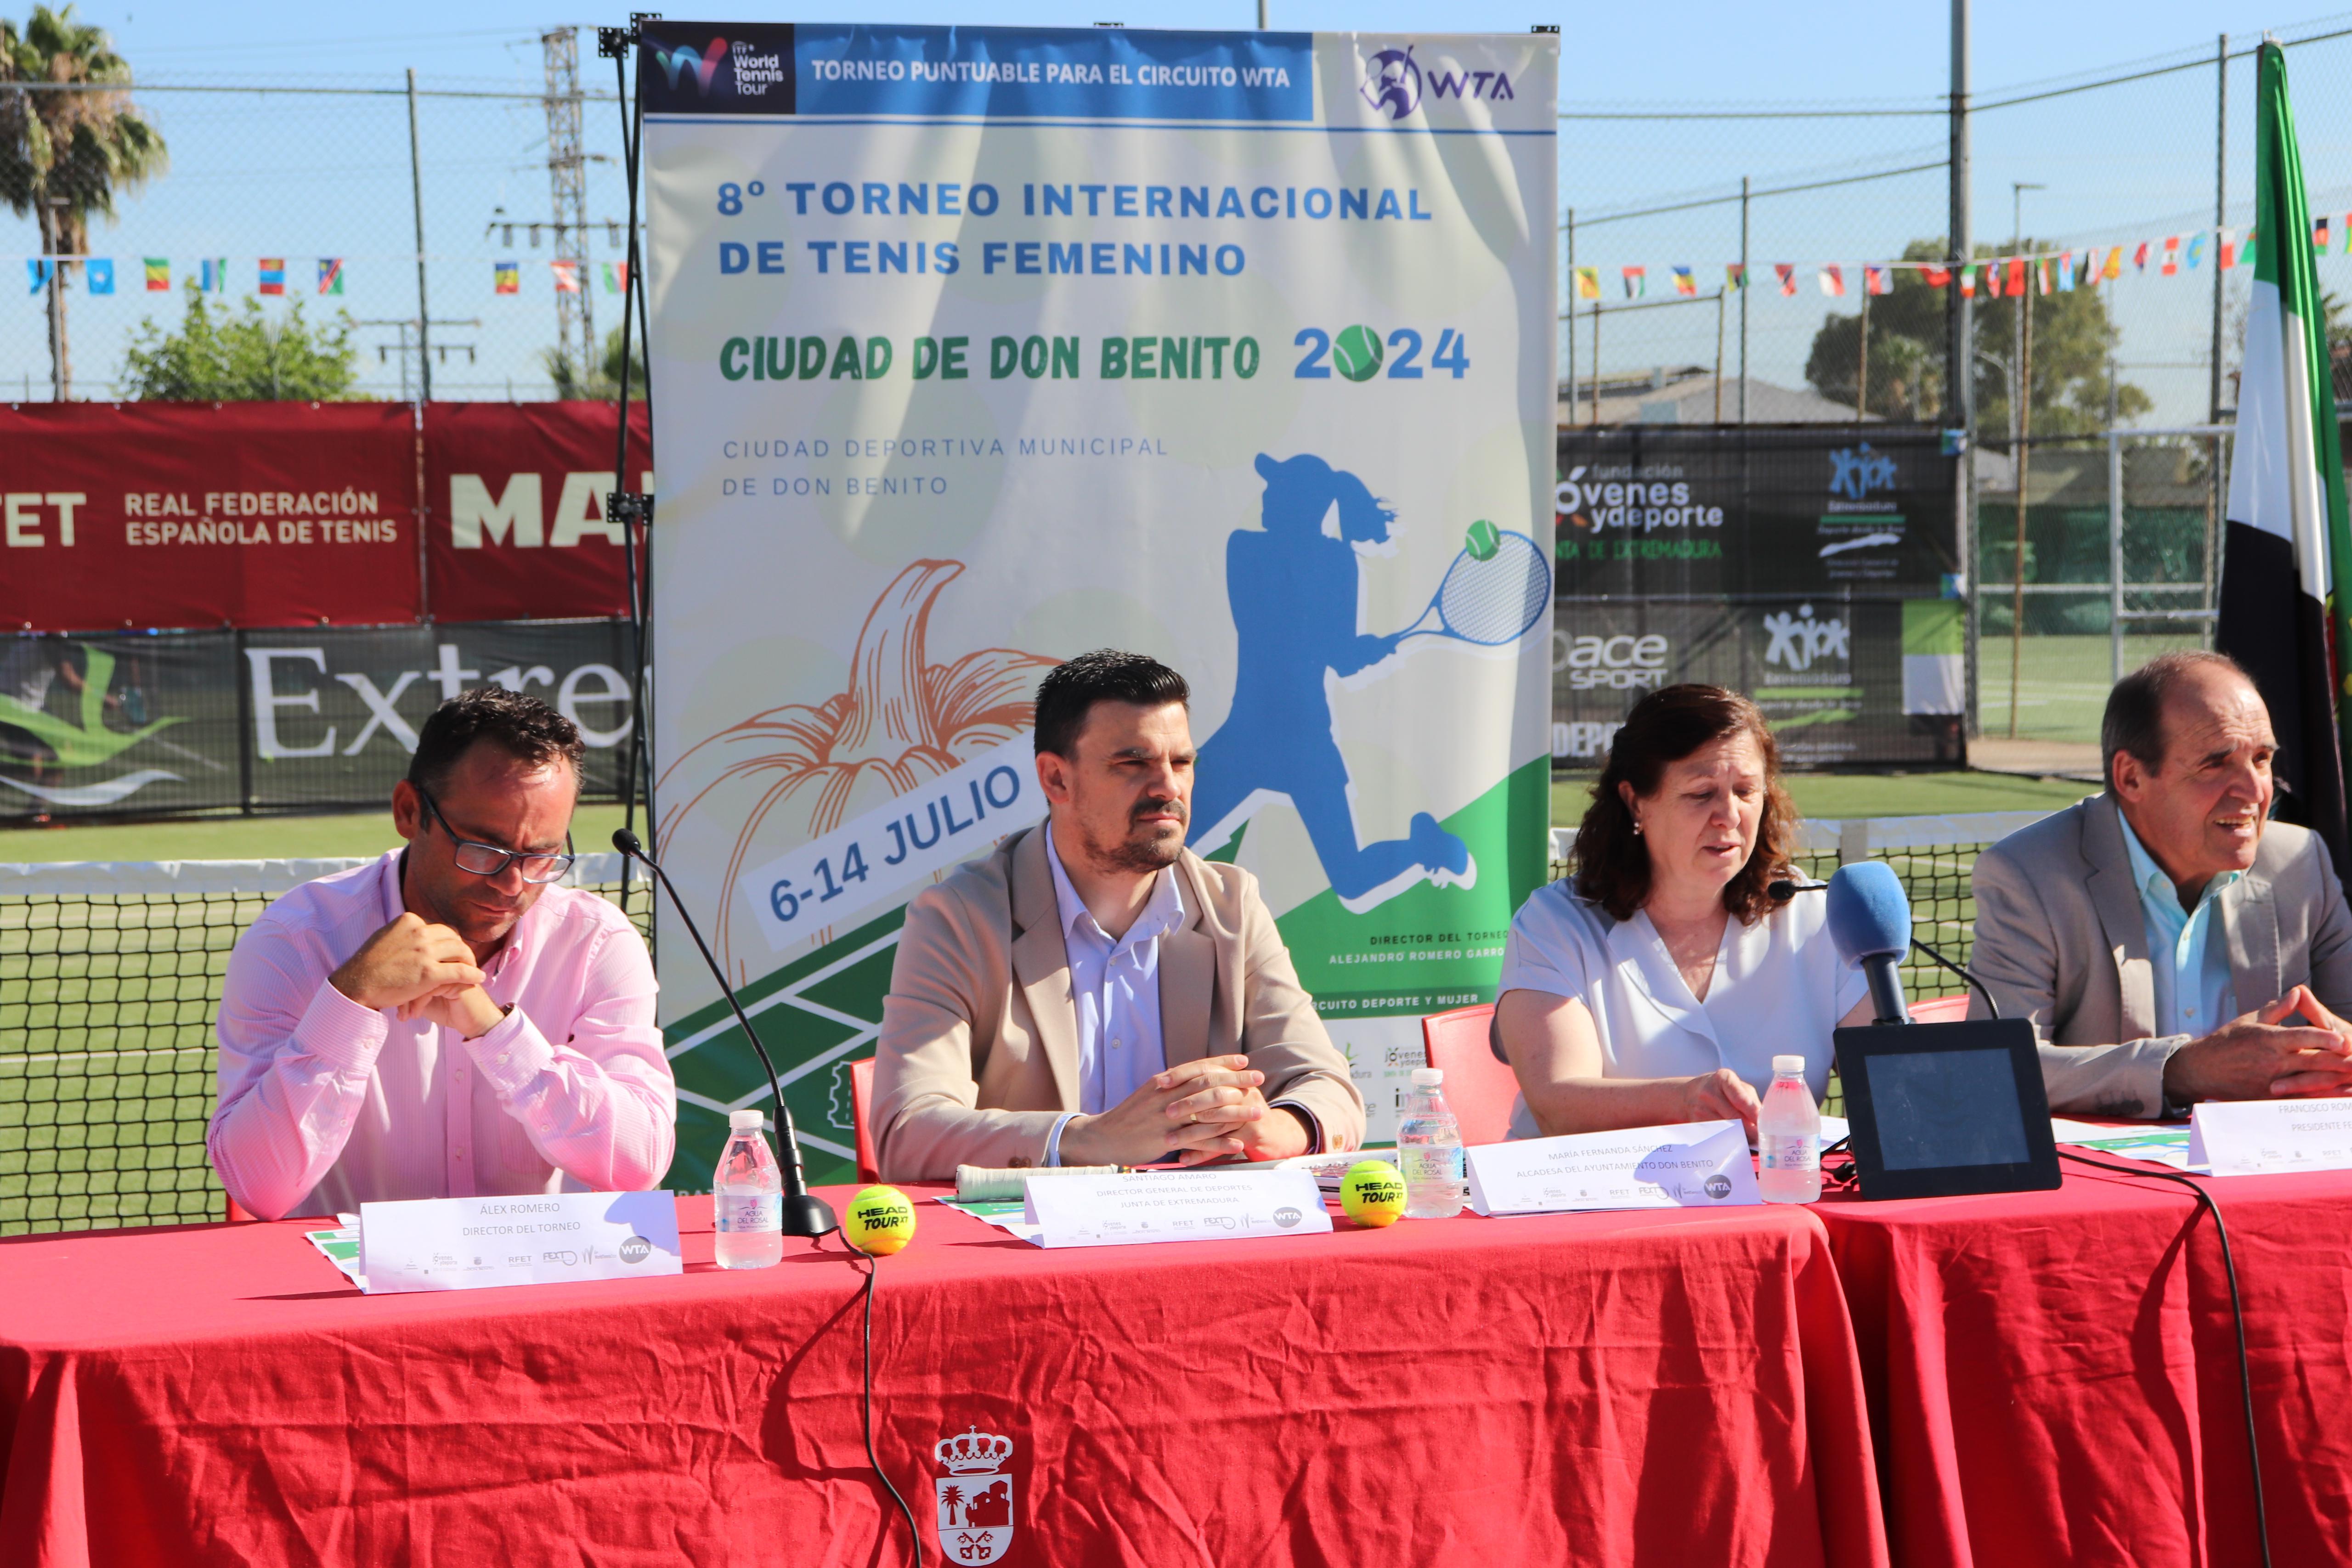 Image 0 of article La Junta de Extremadura apoya el VIII Torneo Internacional de Tenis Femenino que se celebrará en Don Benito del 6 al 14 de julio